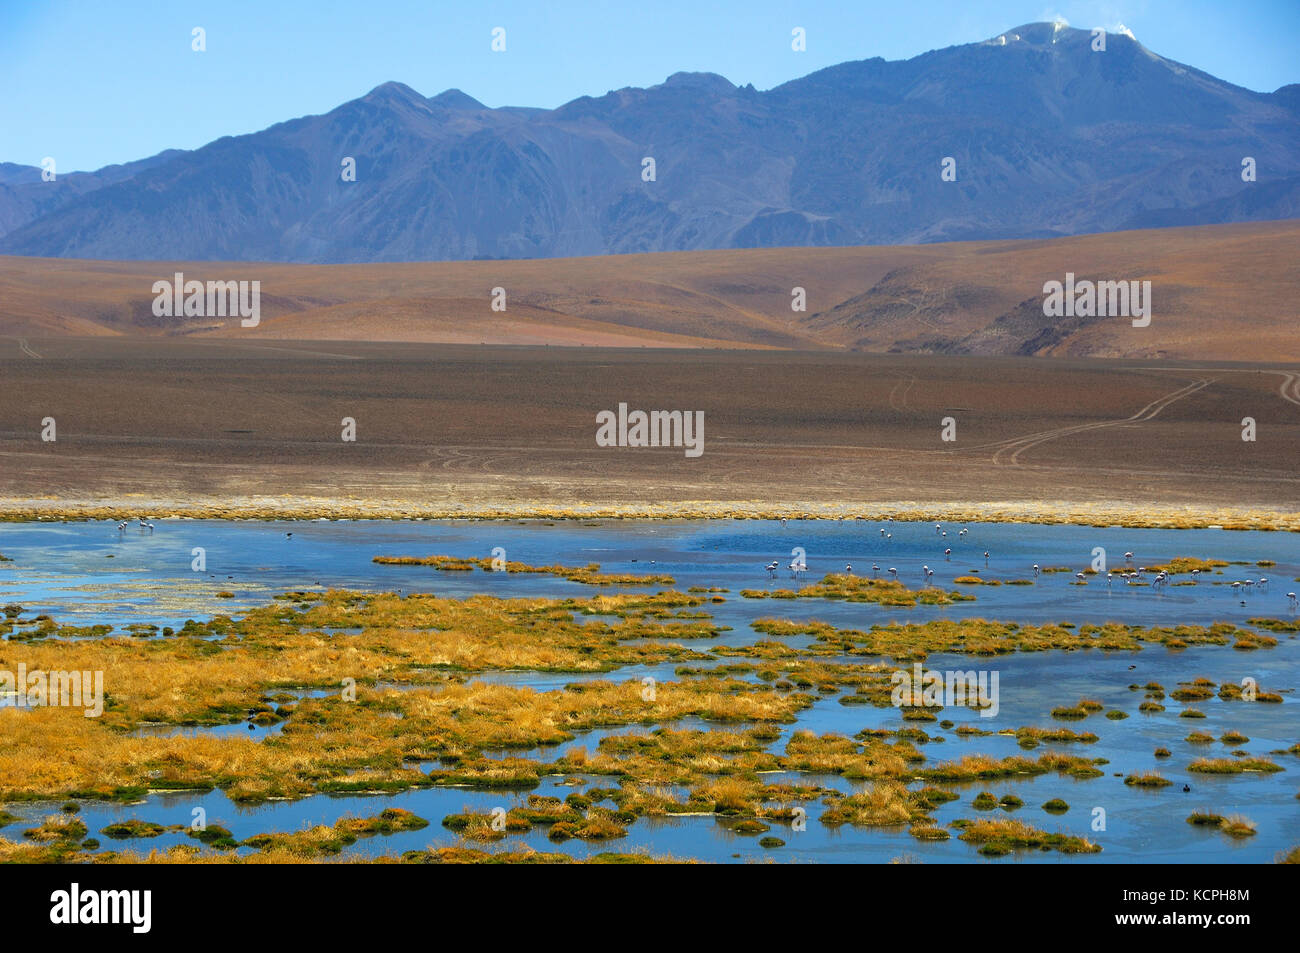 Chile desierto de Atacama, el río putana formularios en la meseta una amplia zona húmeda que alberga un gran número de especies de aves nidificantes. cilean flamencos (Phoenicopterus cilensis). Foto de stock